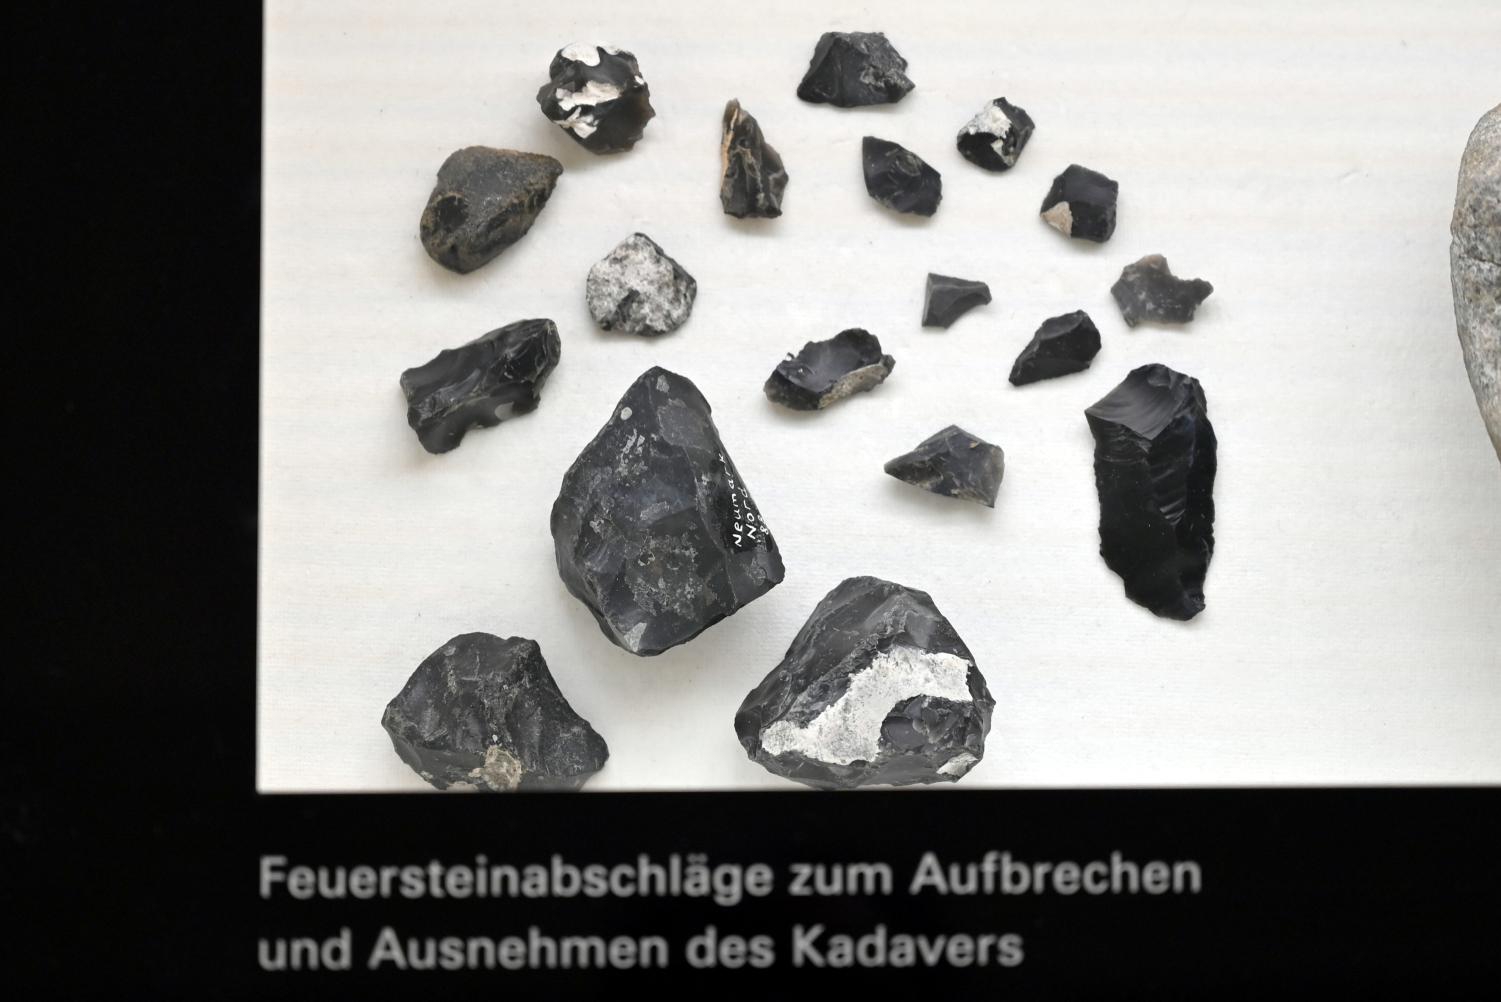 Feuersteinabschläge zum Aufbrechen und Ausnehmen des Kadavers, Intra-Saale-Warmzeit, 200000 - 40000 v. Chr., 200000 v. Chr.